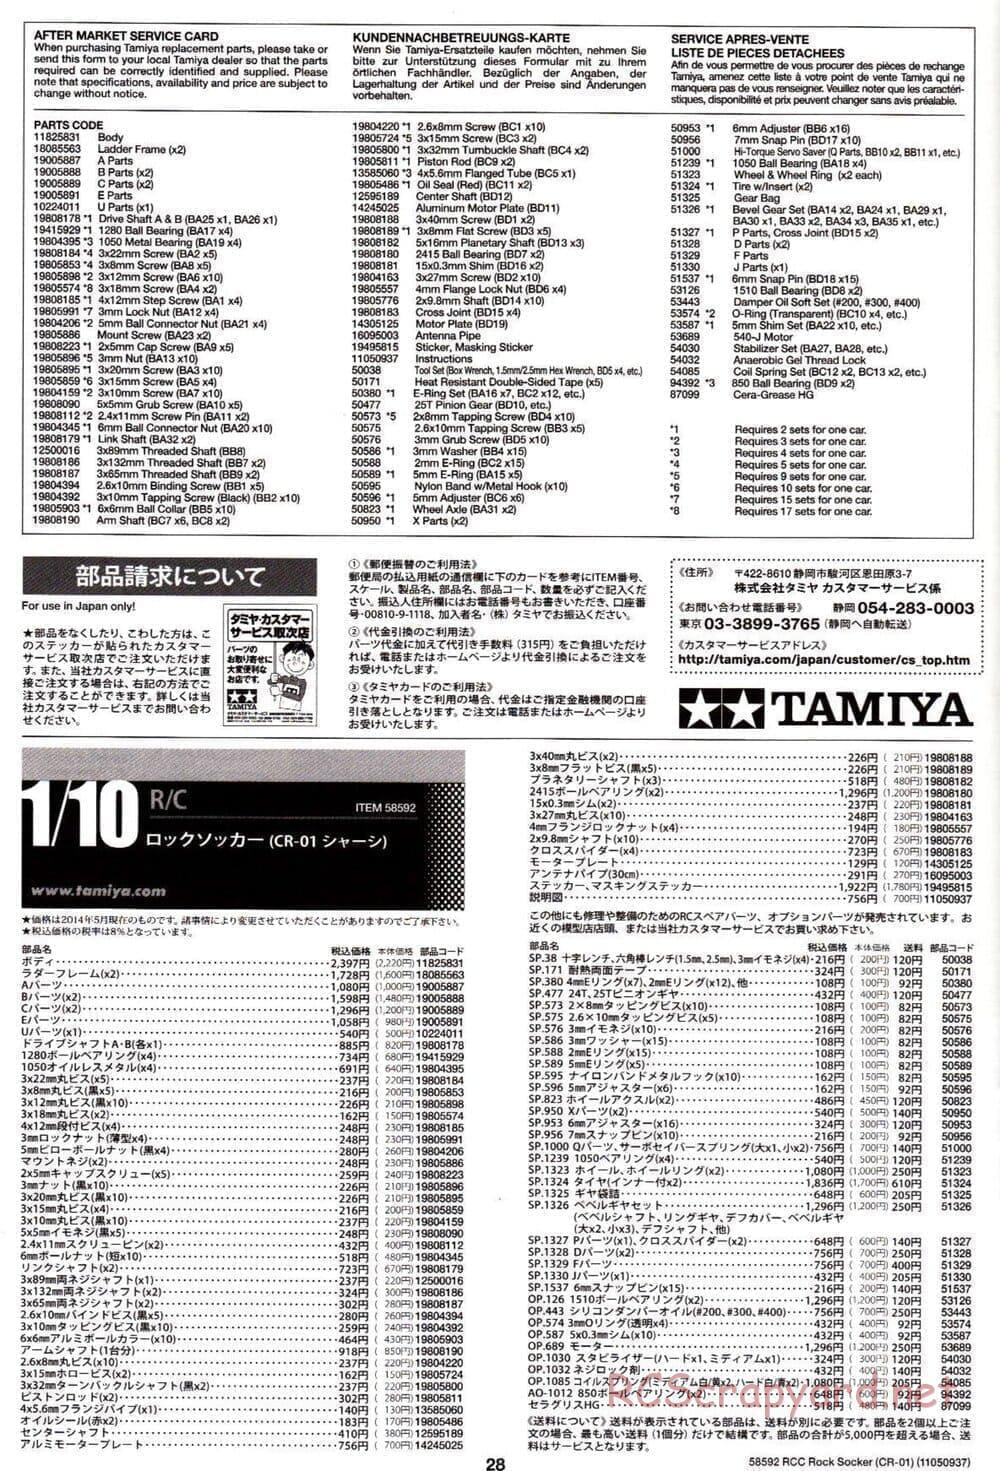 Tamiya - Rock Socker - CR-01 Chassis - Manual - Page 28